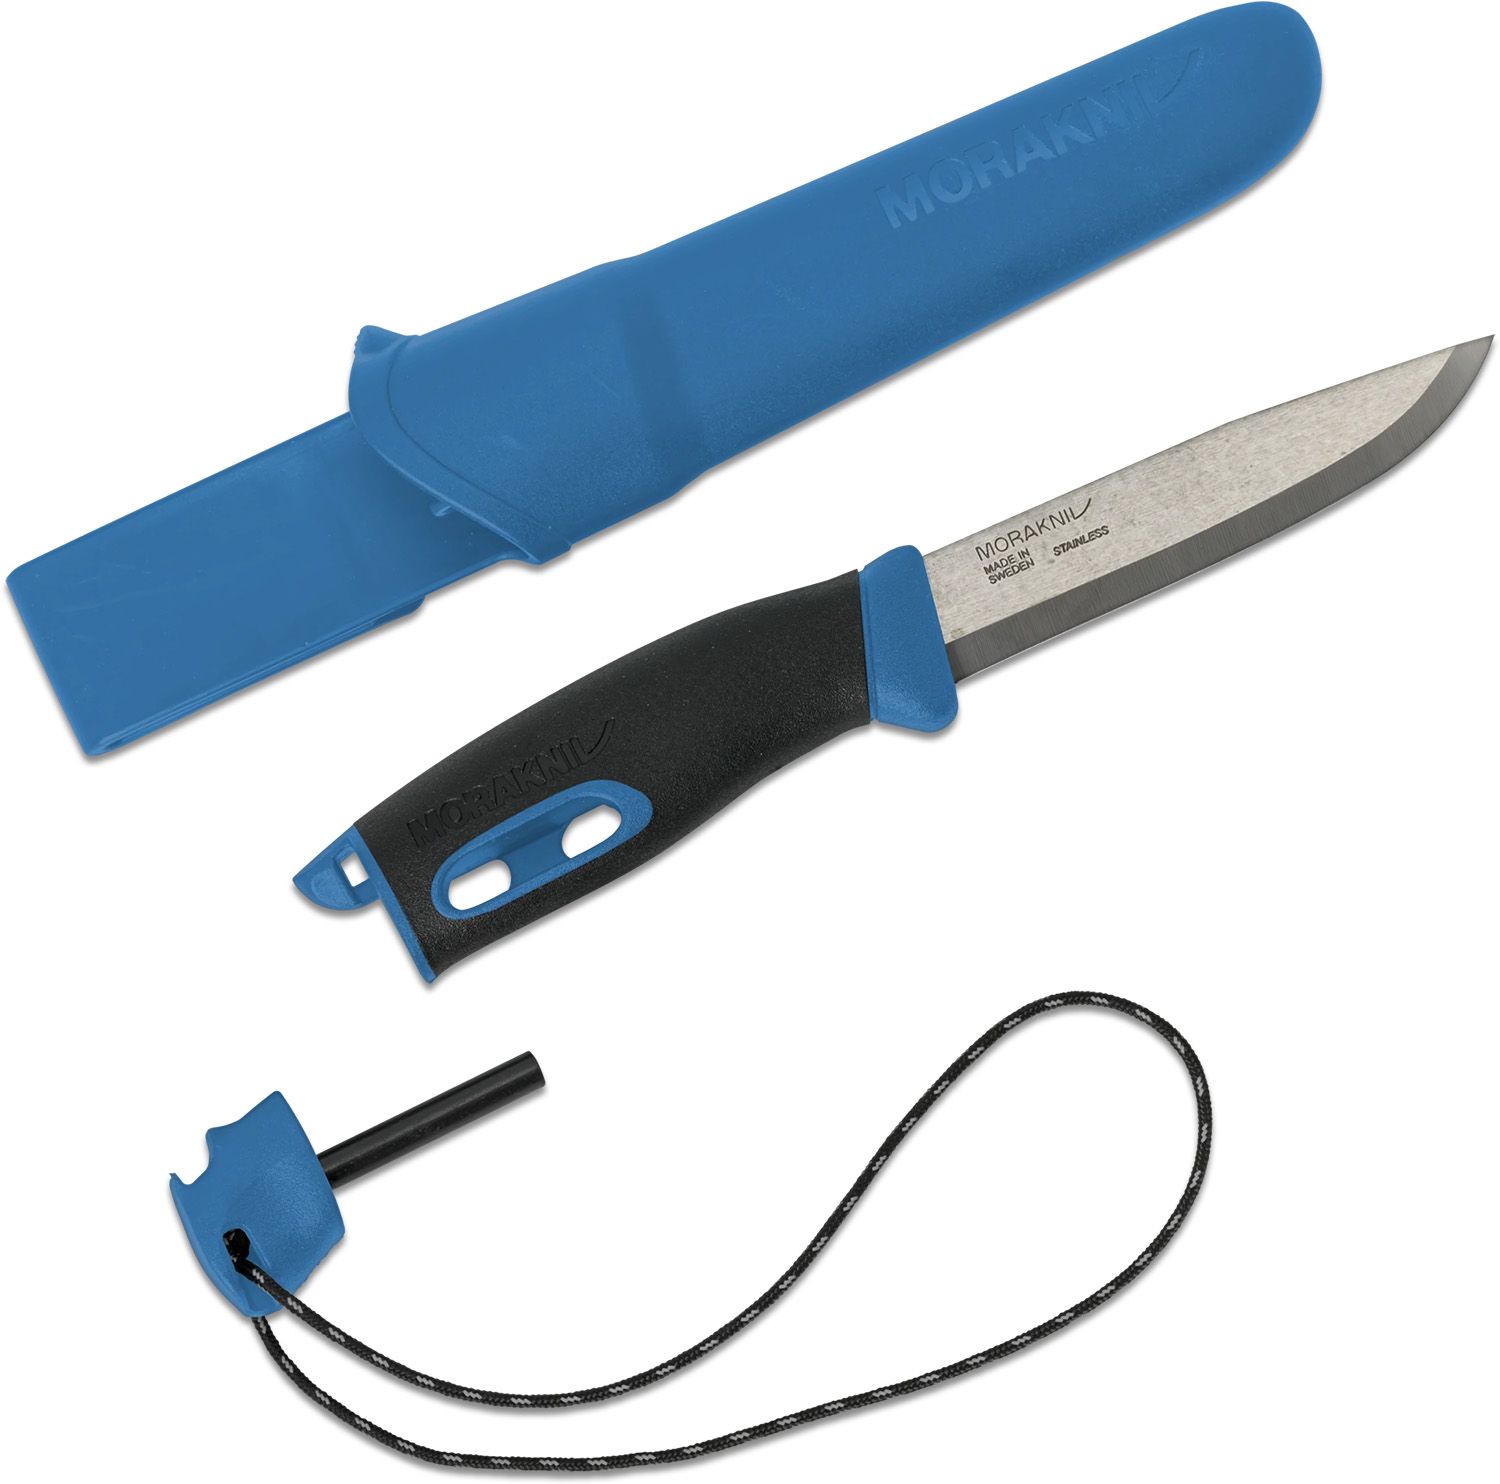 Sharpens Best Sharp-N-Spark Knife Sharpener & Fire Starter Multi Tool